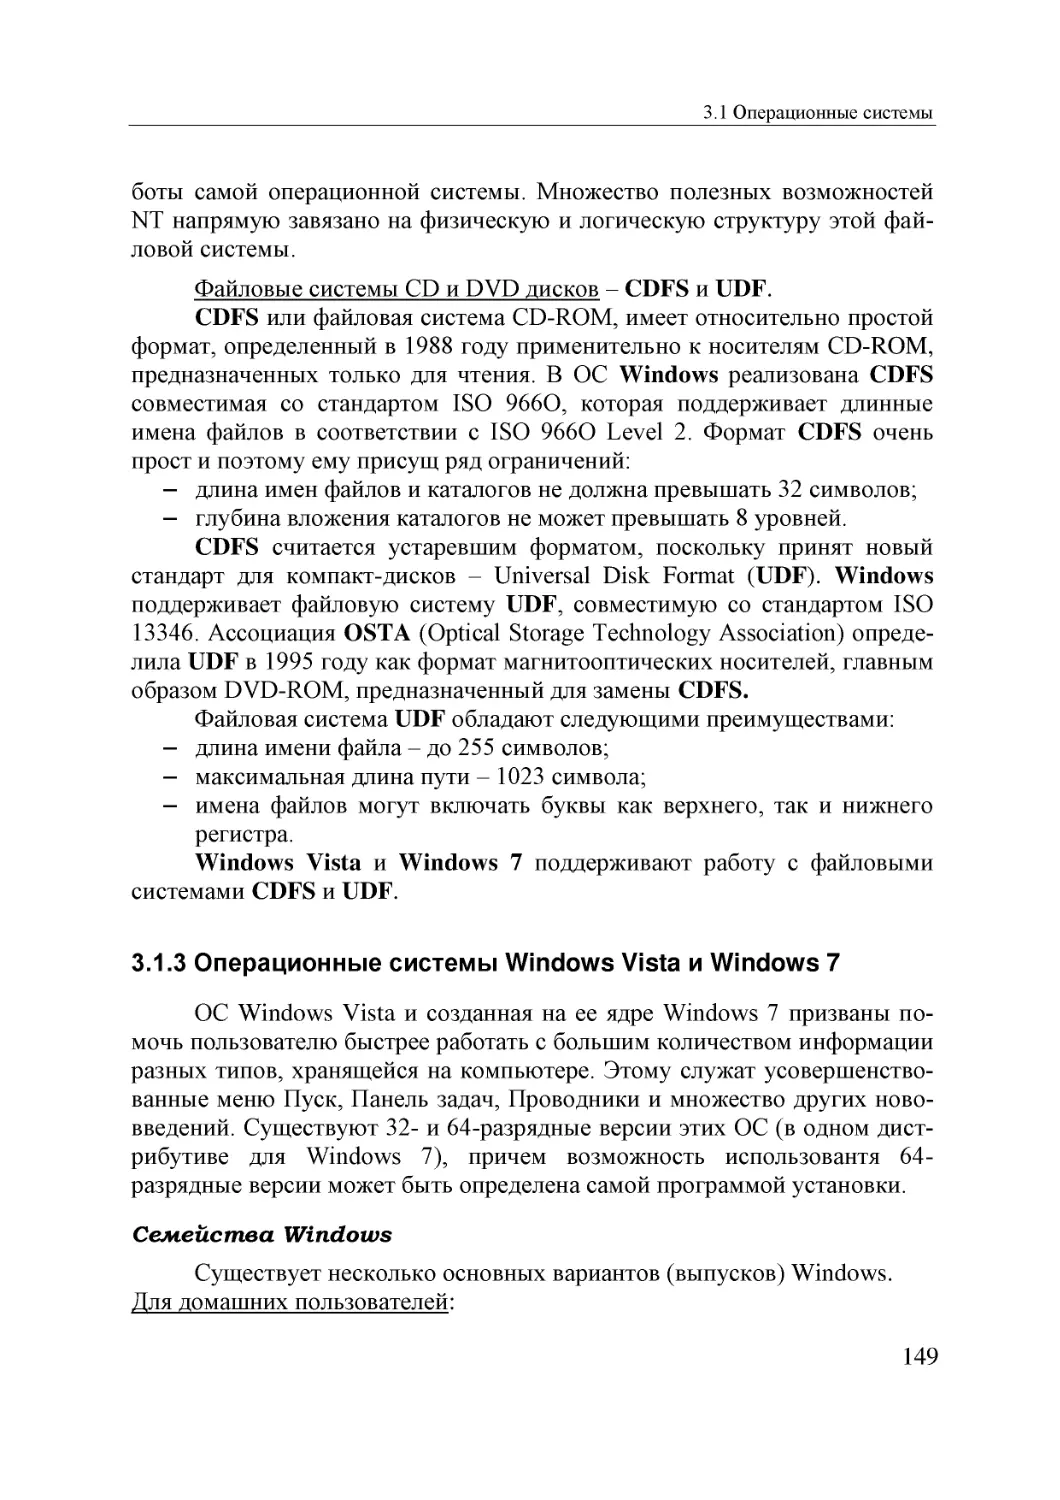 Informatika_Uchebnik_dlya_vuzov_2010 149